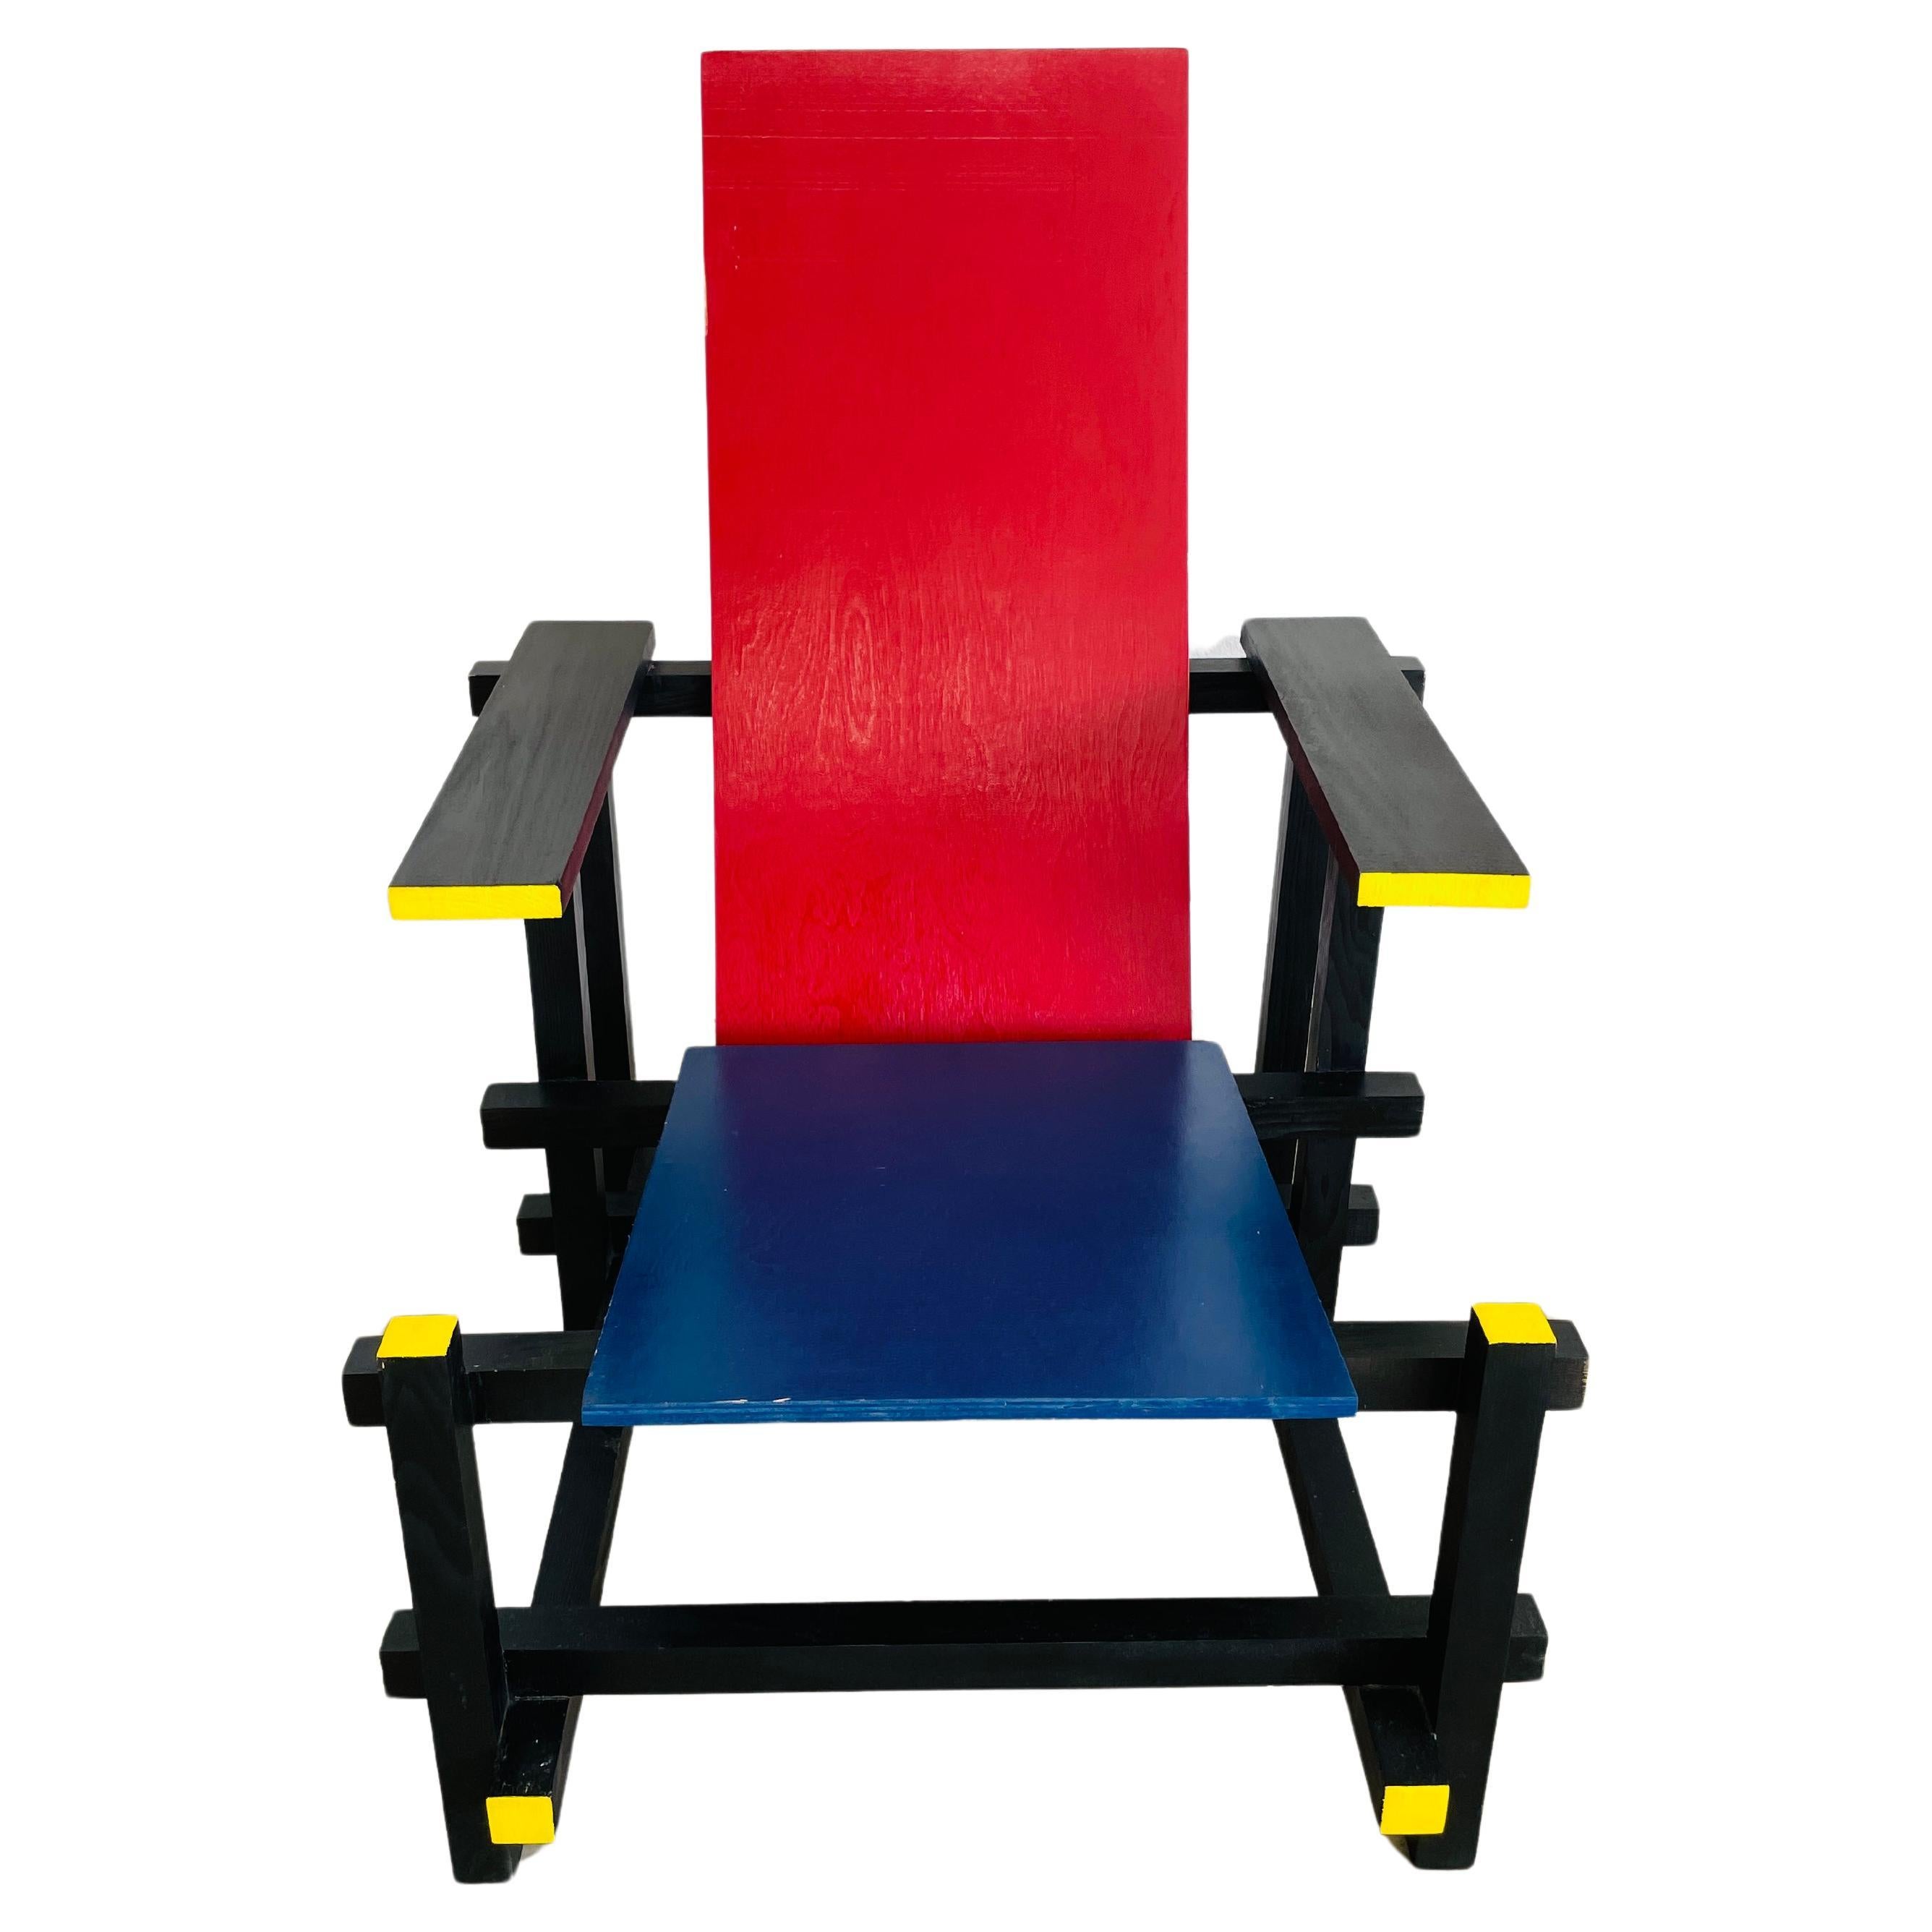 Chaise vintage Gerrit Rietveld style Red Blue De Stijl en bois MCM Bauhaus